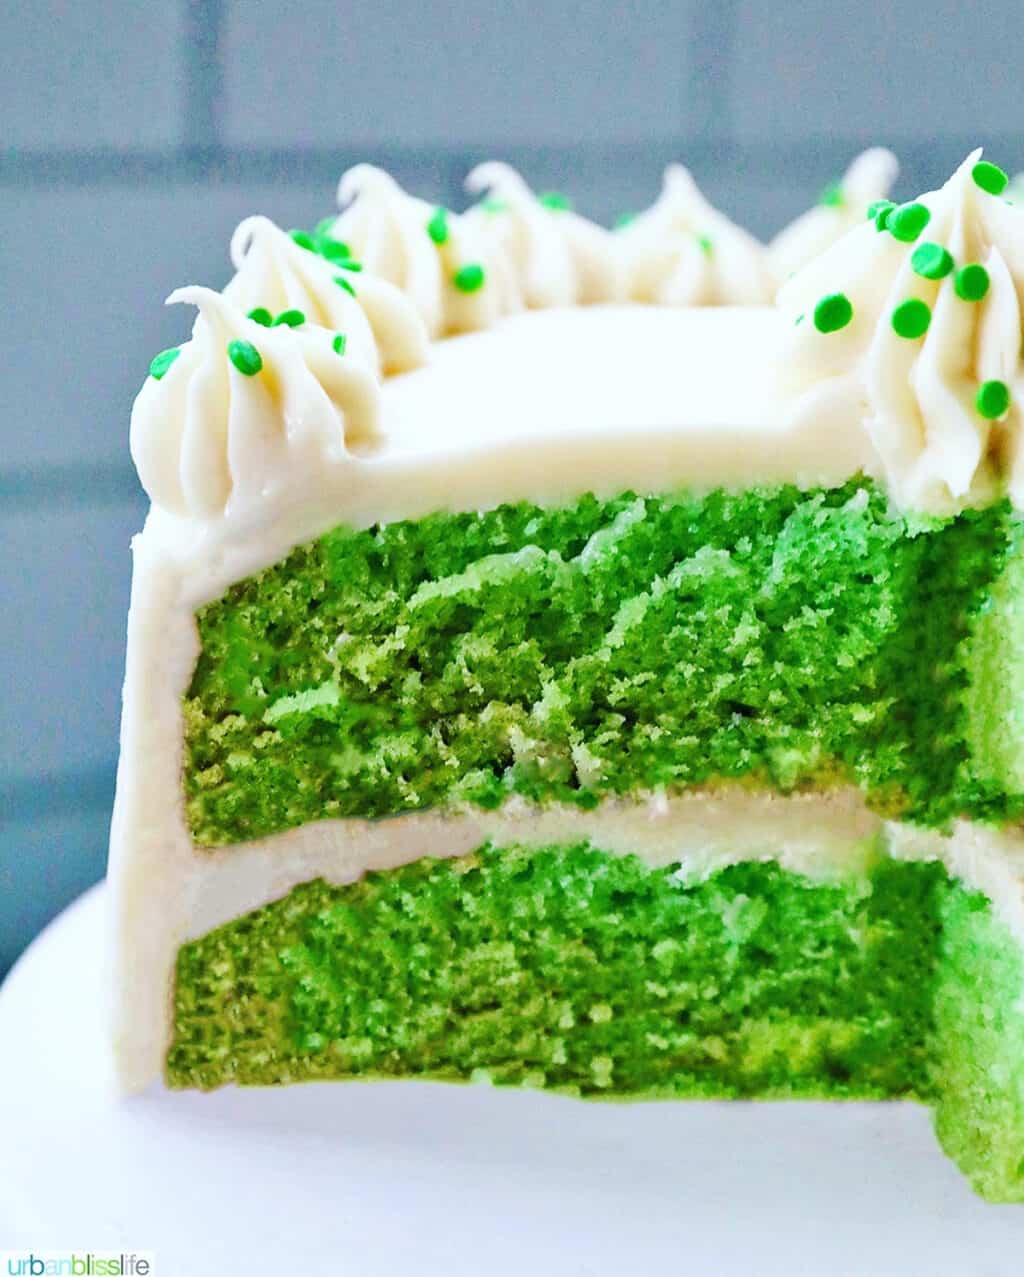 Green velvet cake